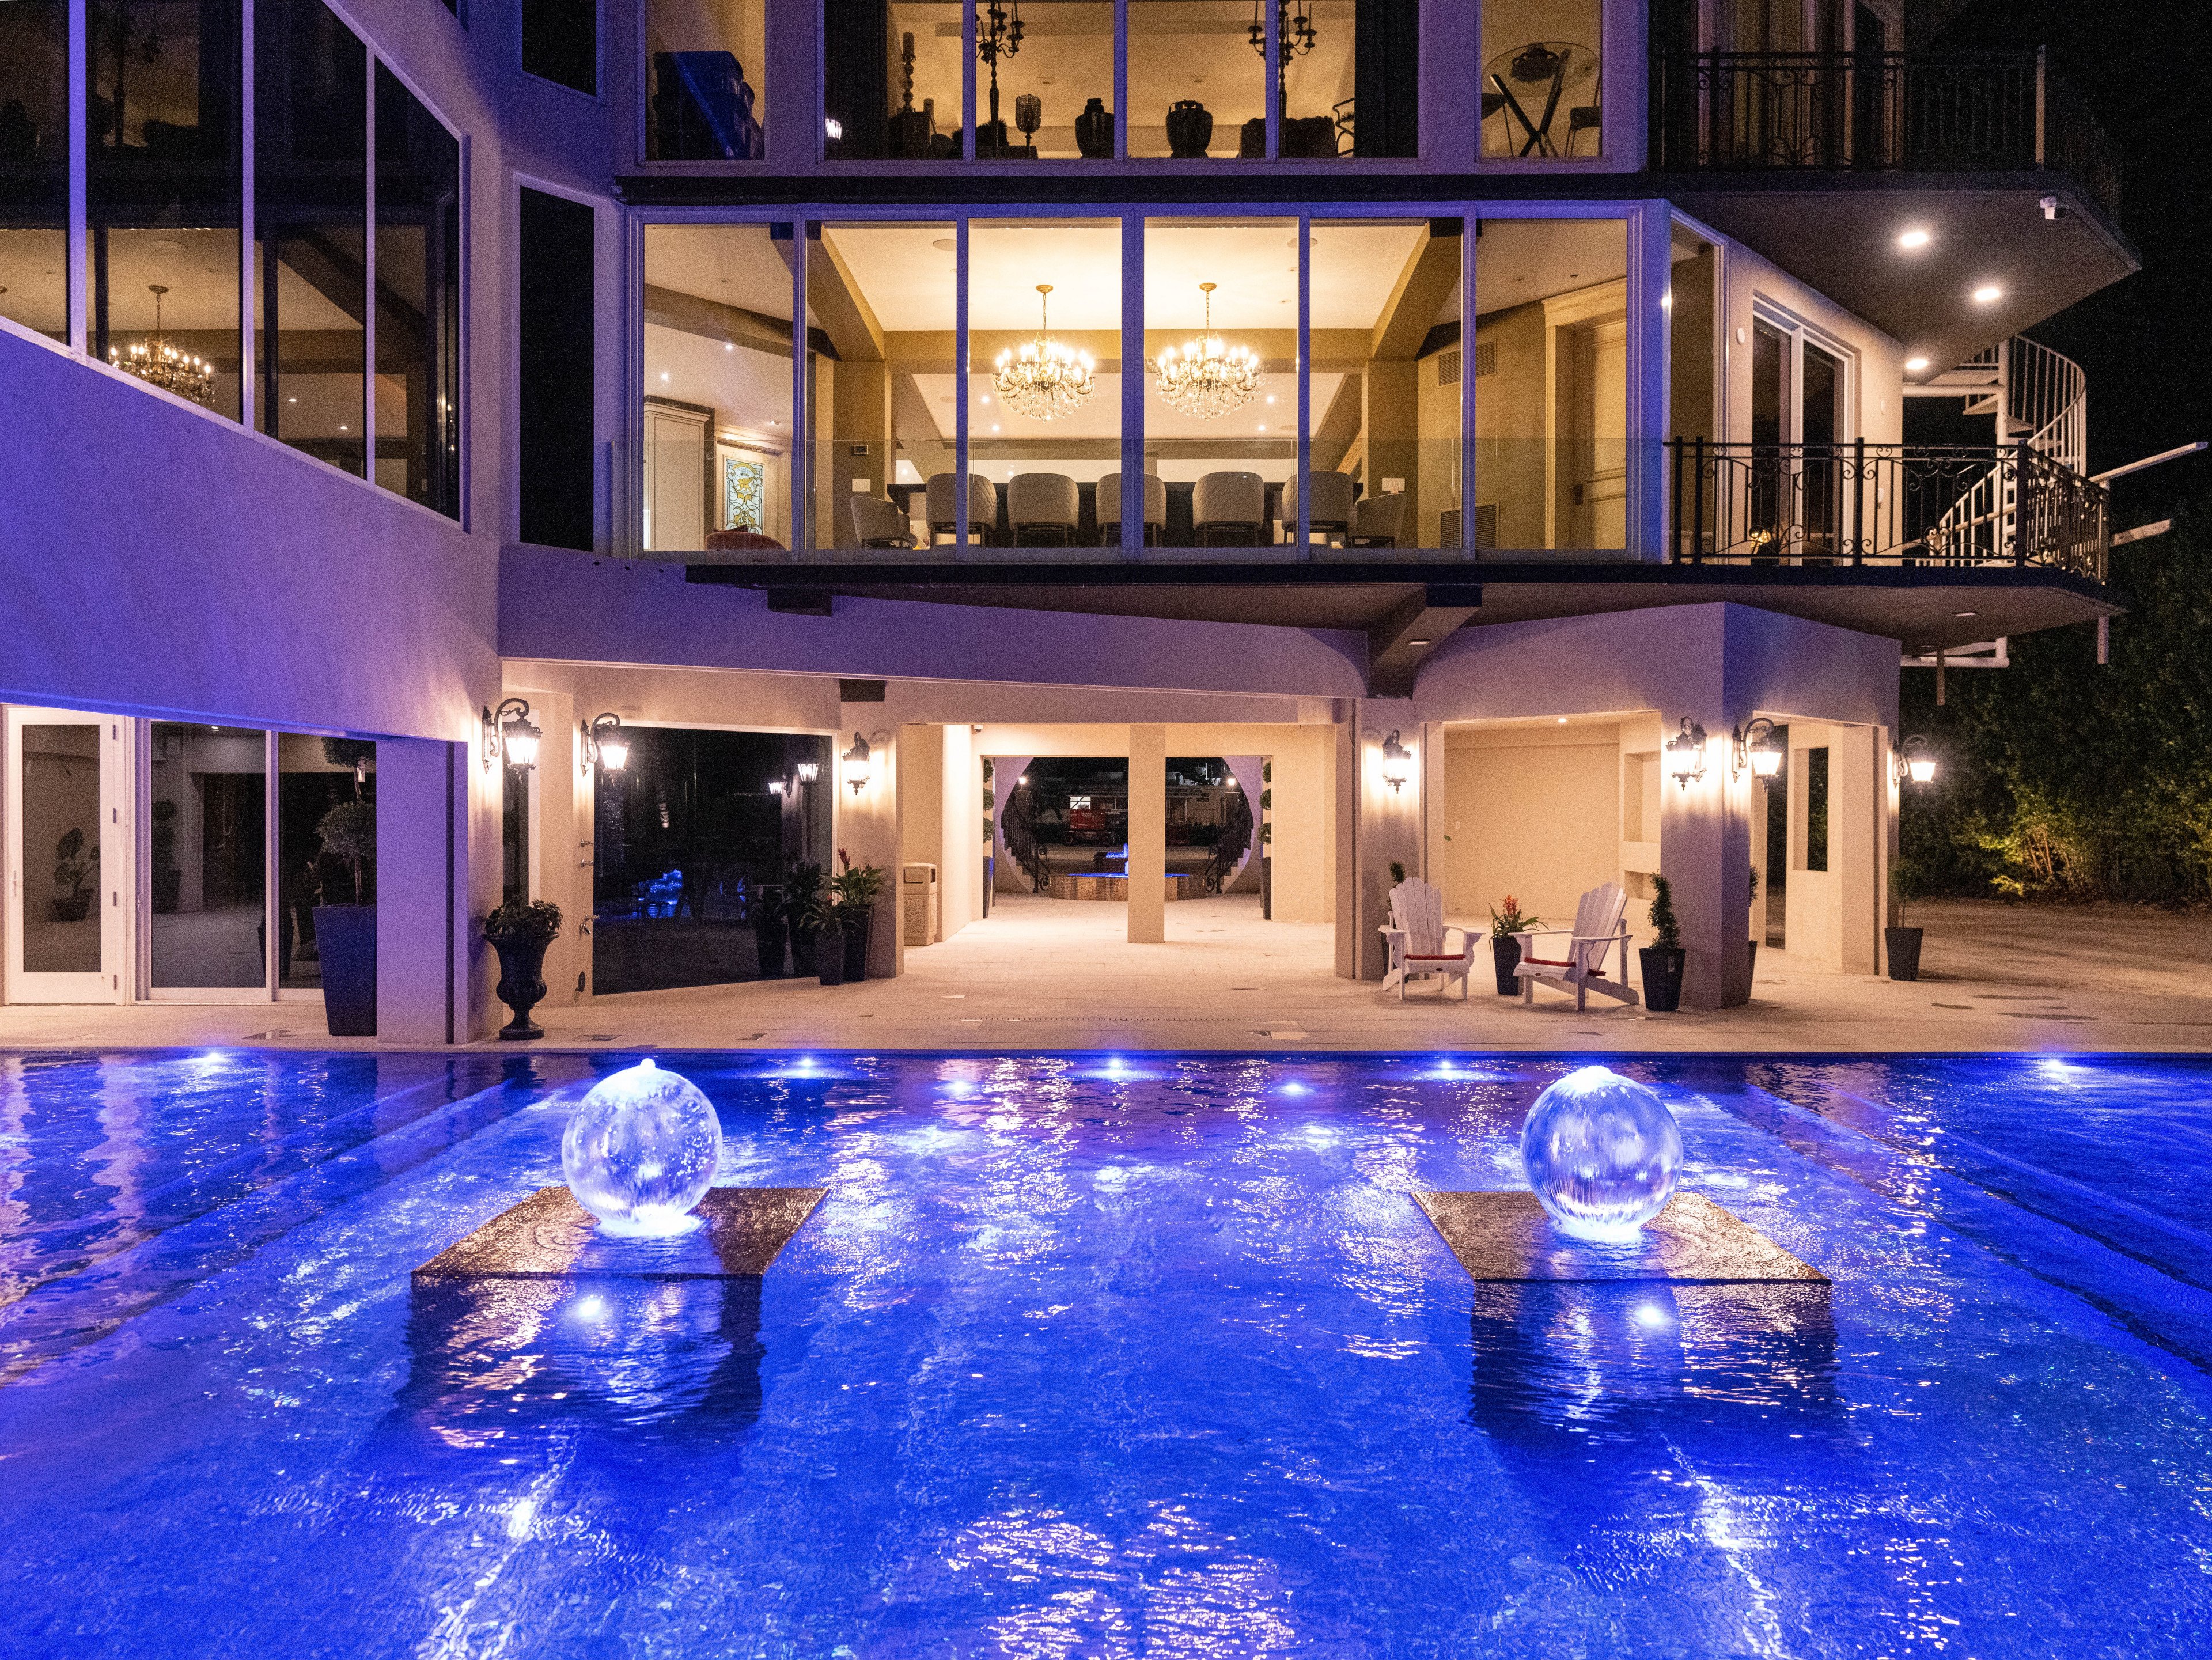 Islamorada 0 - Islamorada vacation rentals with pool access